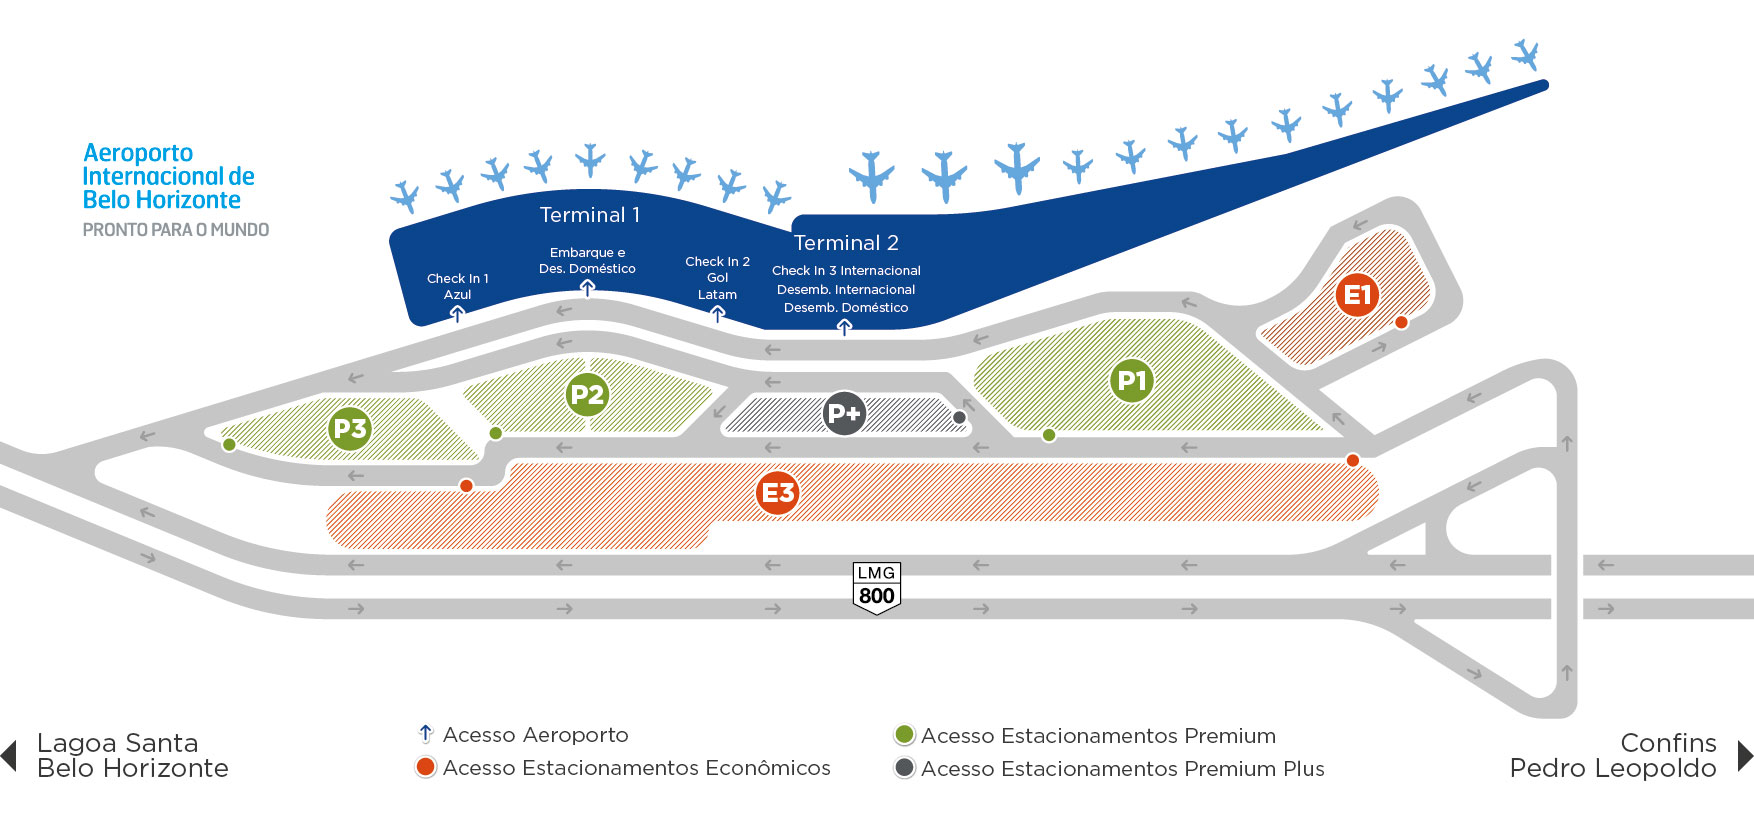 Mapa do Estacionamento do Aeroporto Internacional de Belo Horizonte, em Confins